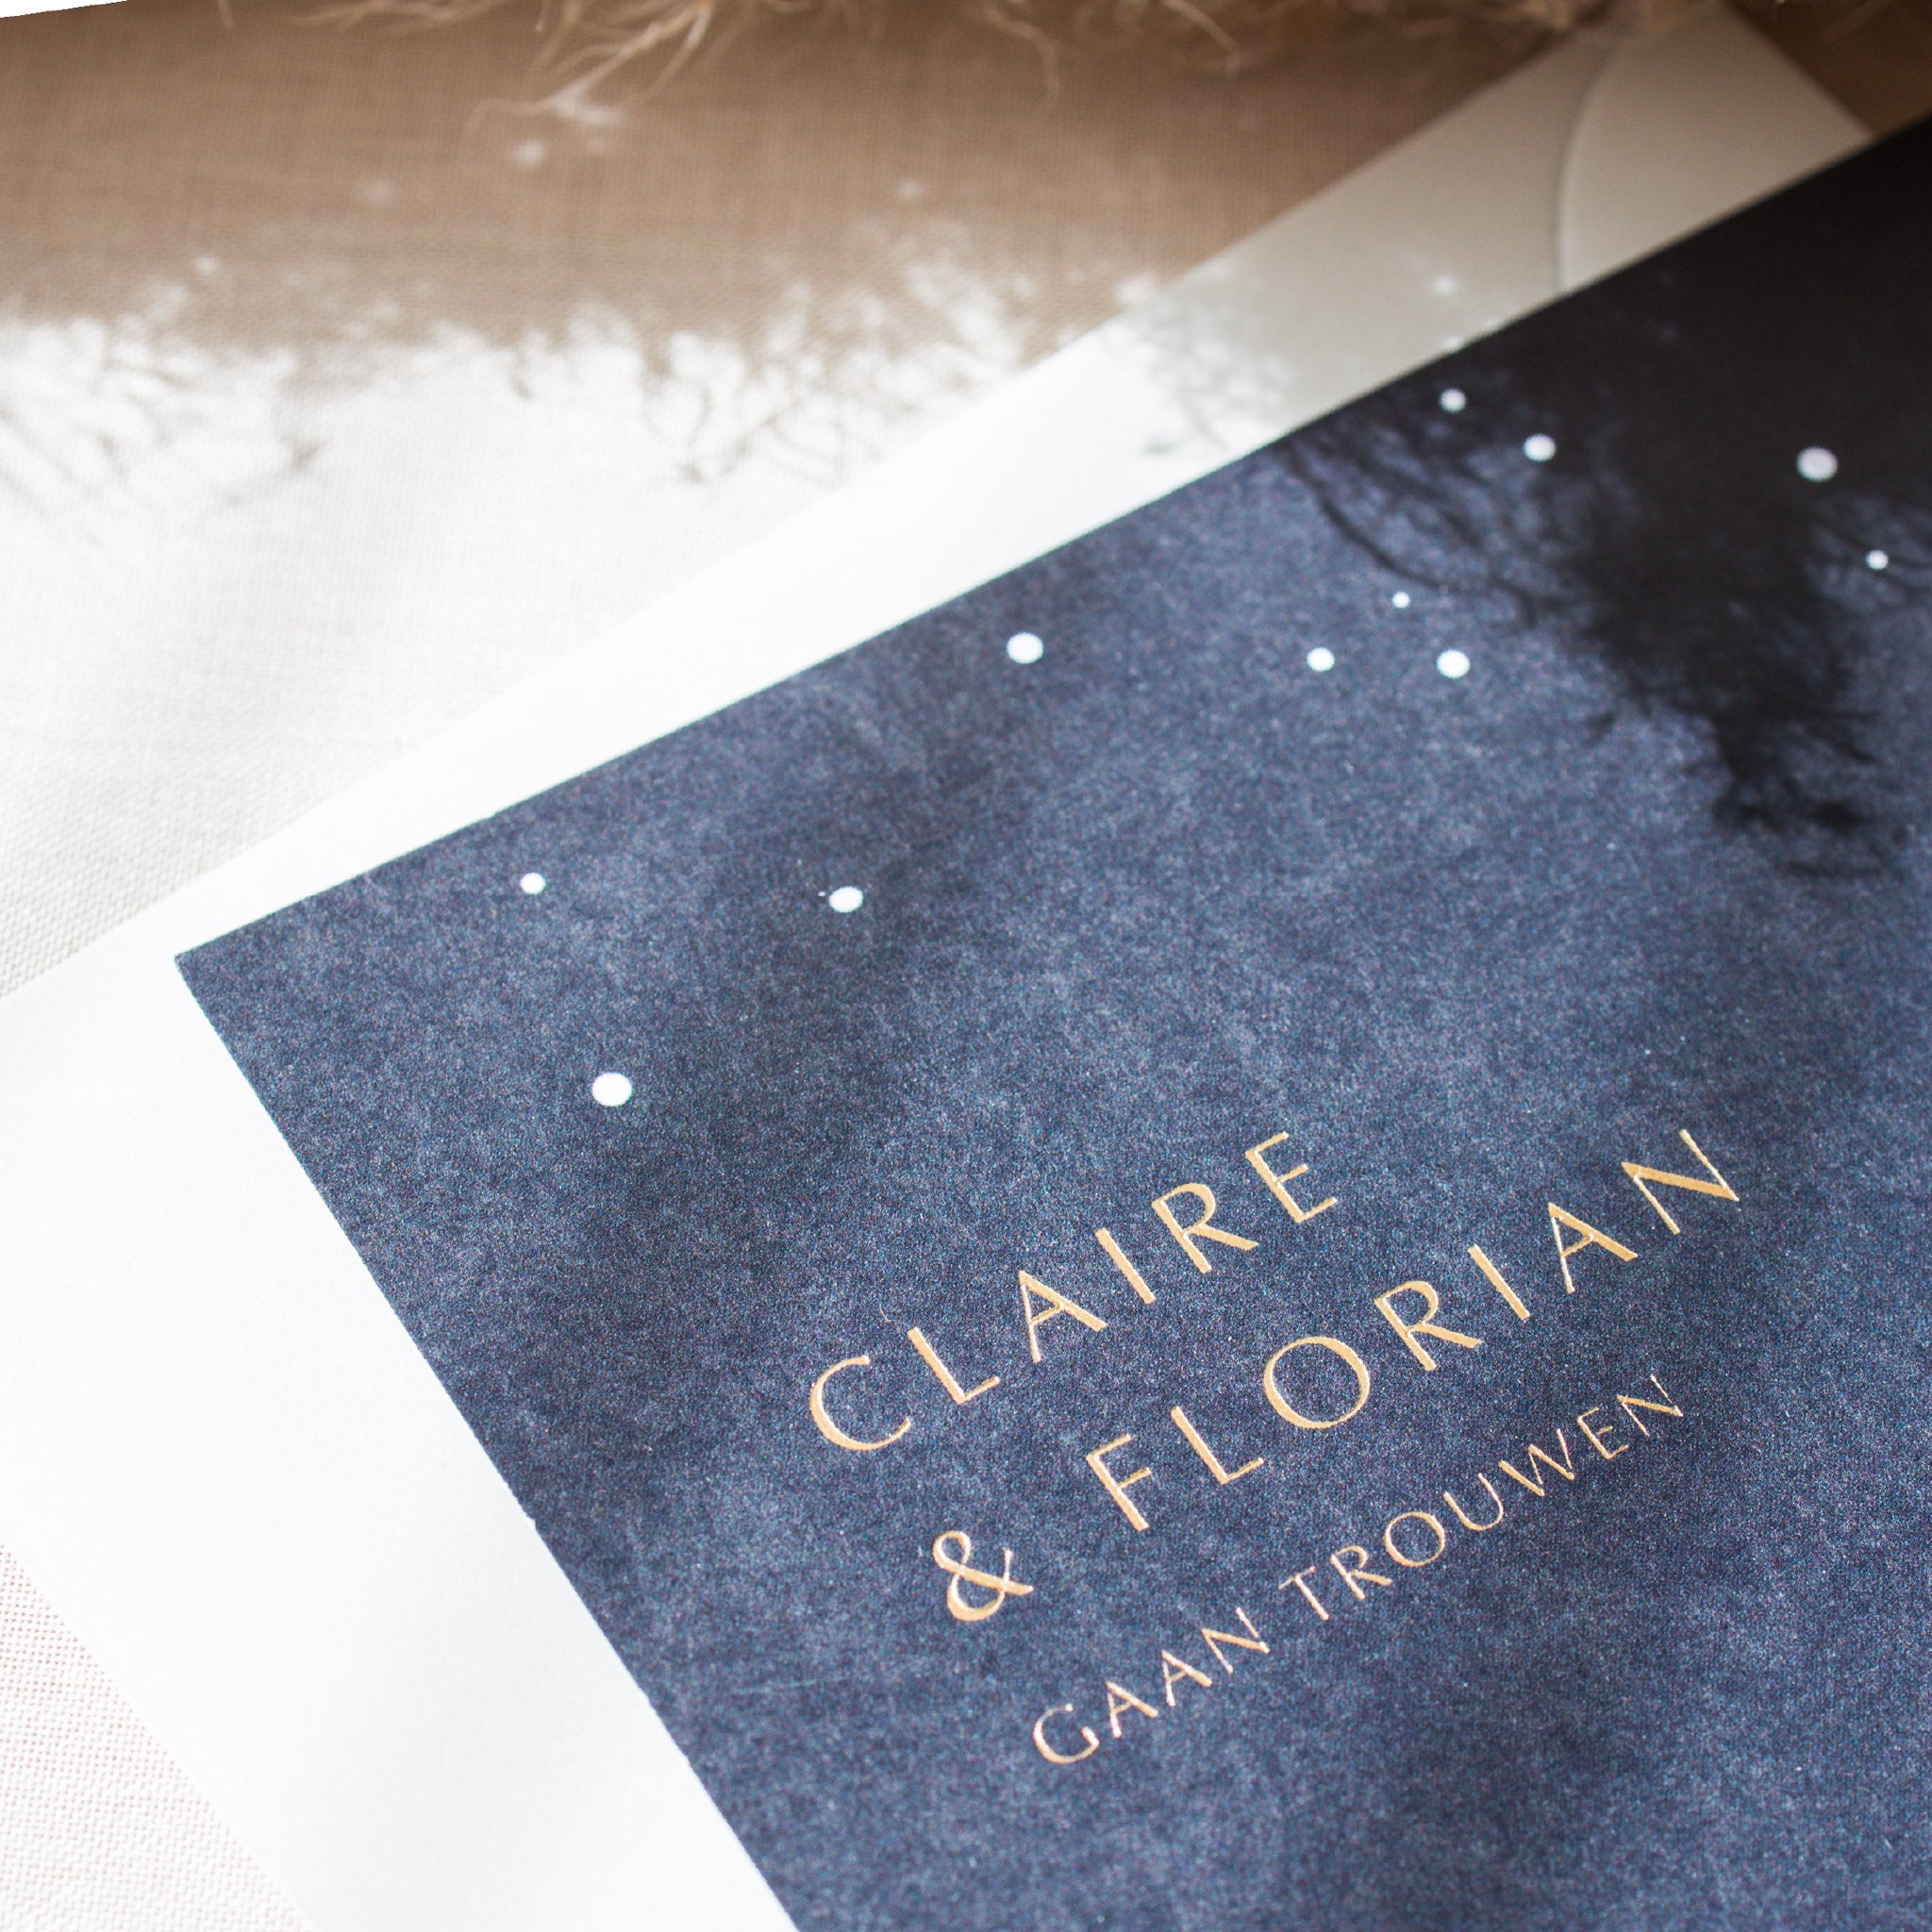 Huwelijksuitnodiging gedrukt met full colour afgewerkt met letterpress foliedruk in de kleur mat goud